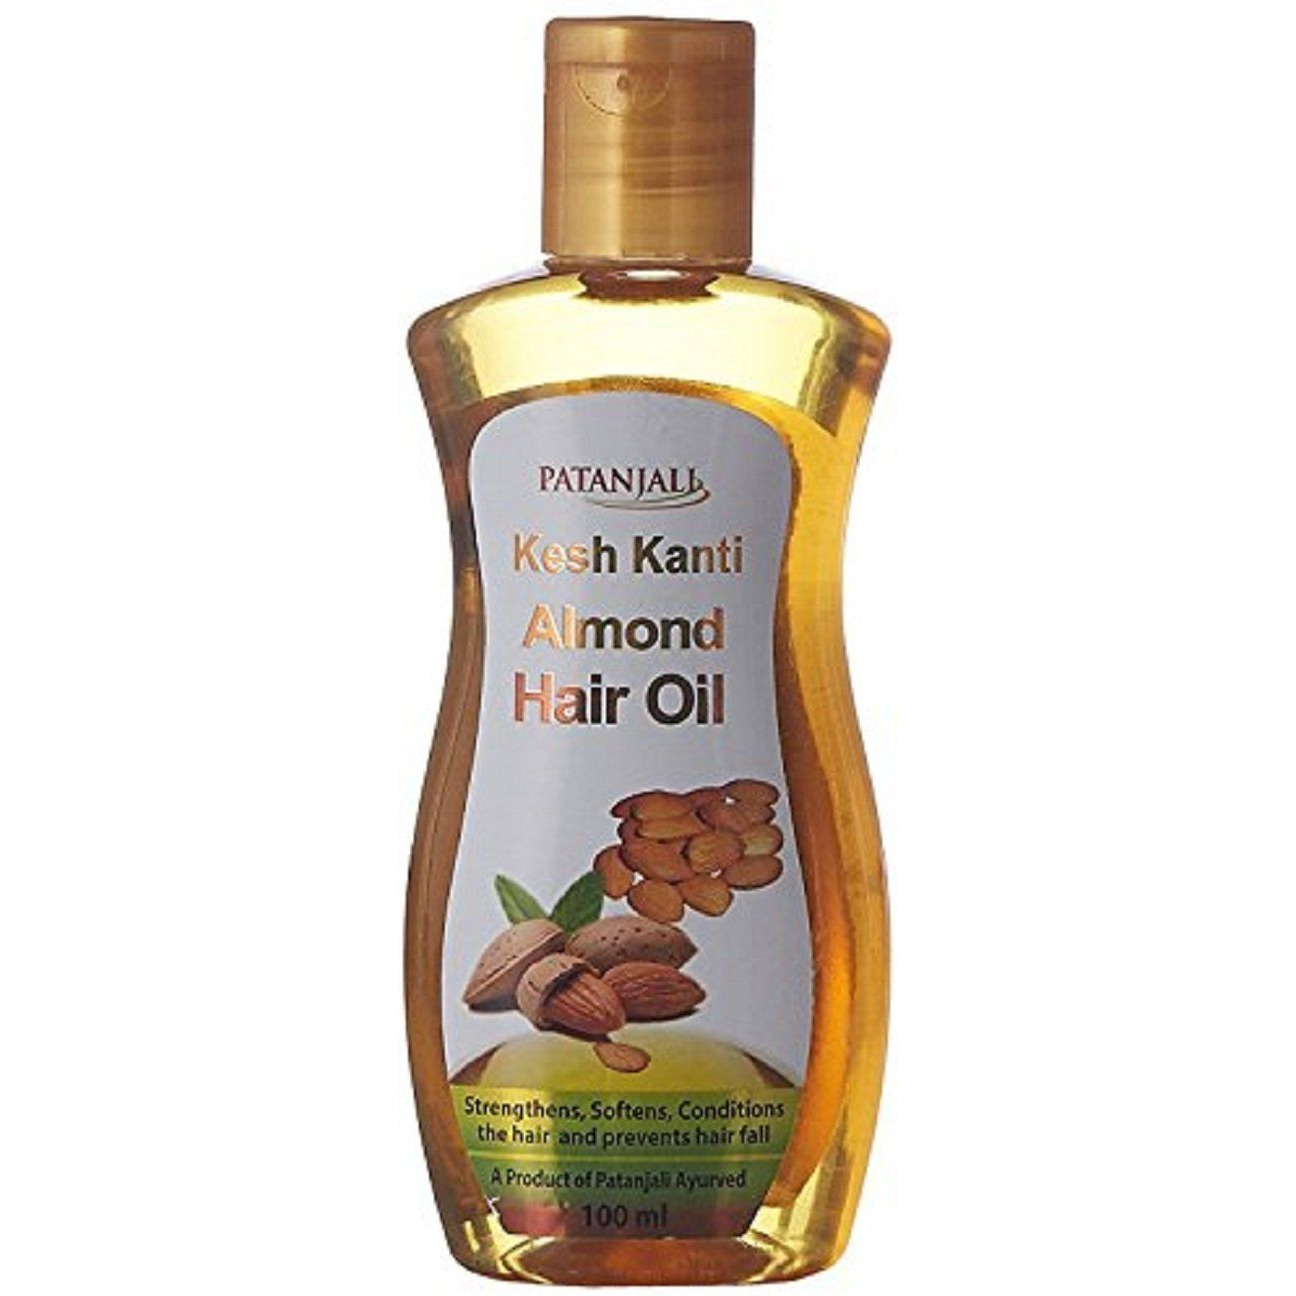 Buy Online Patanjali Kesh Kanti Almond Hair Oil - 200ml  934259